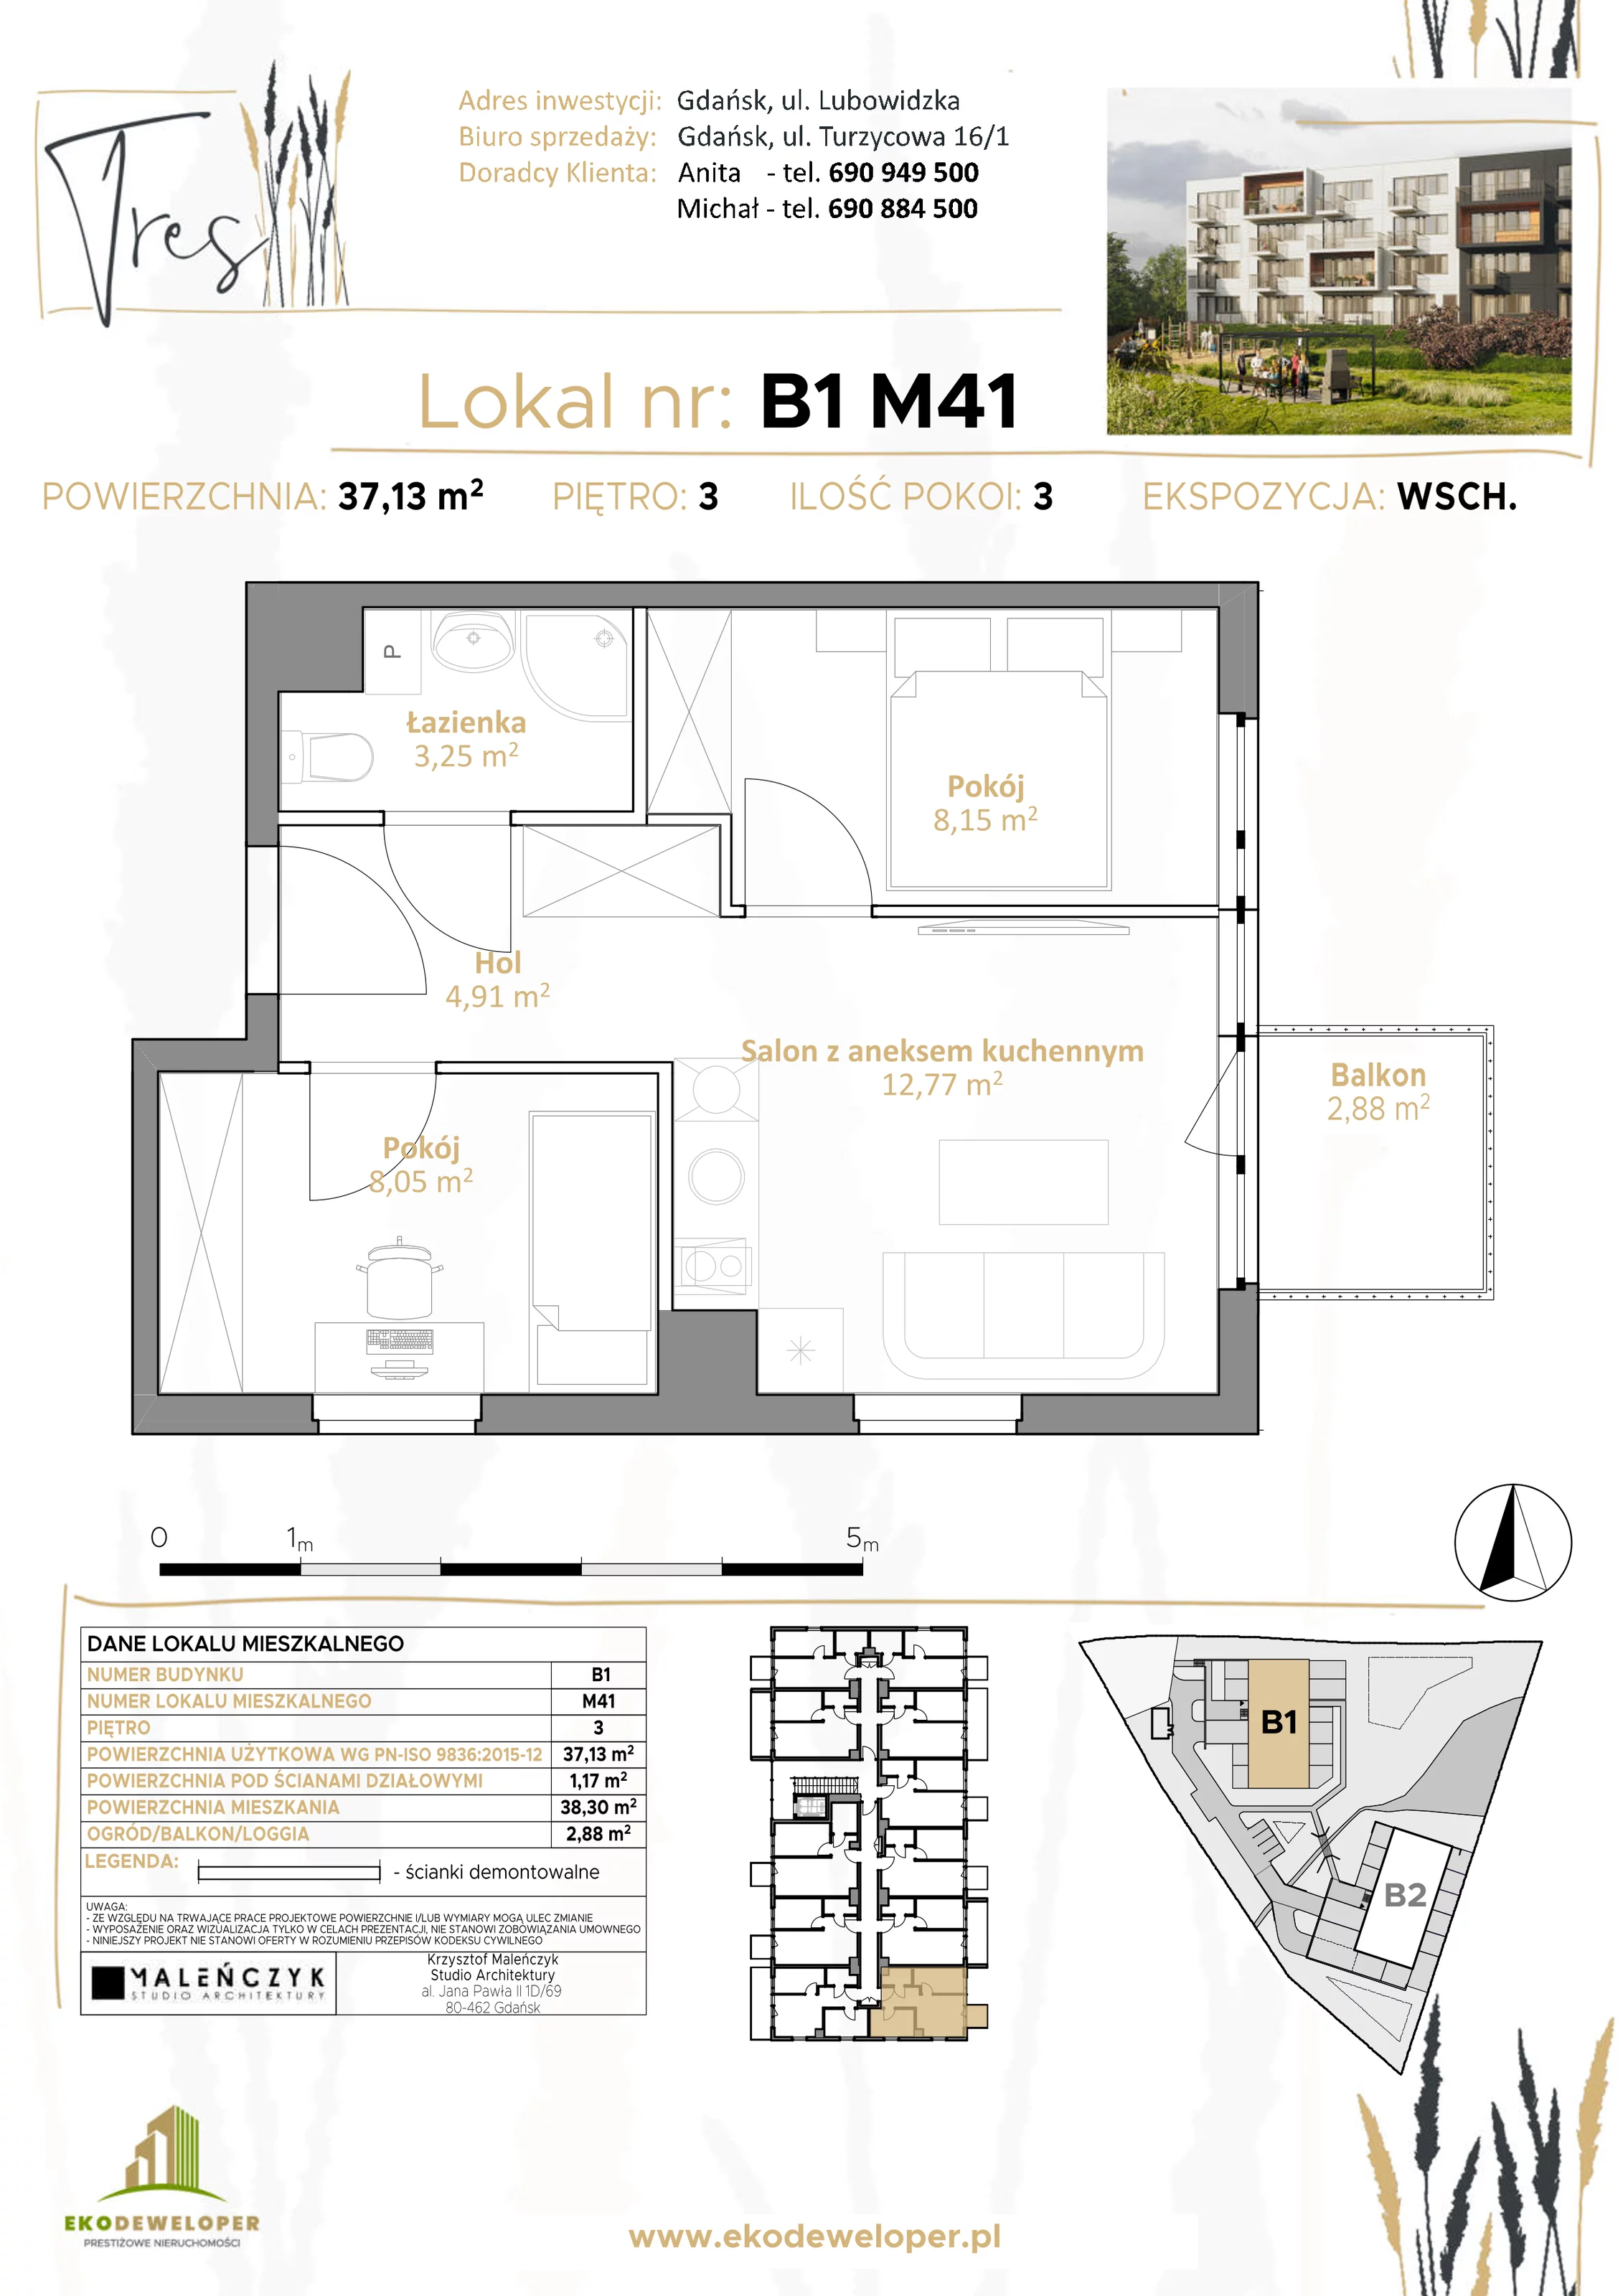 Mieszkanie 37,13 m², piętro 3, oferta nr B1.M41, Tres, Gdańsk, Jasień, ul. Lubowidzka